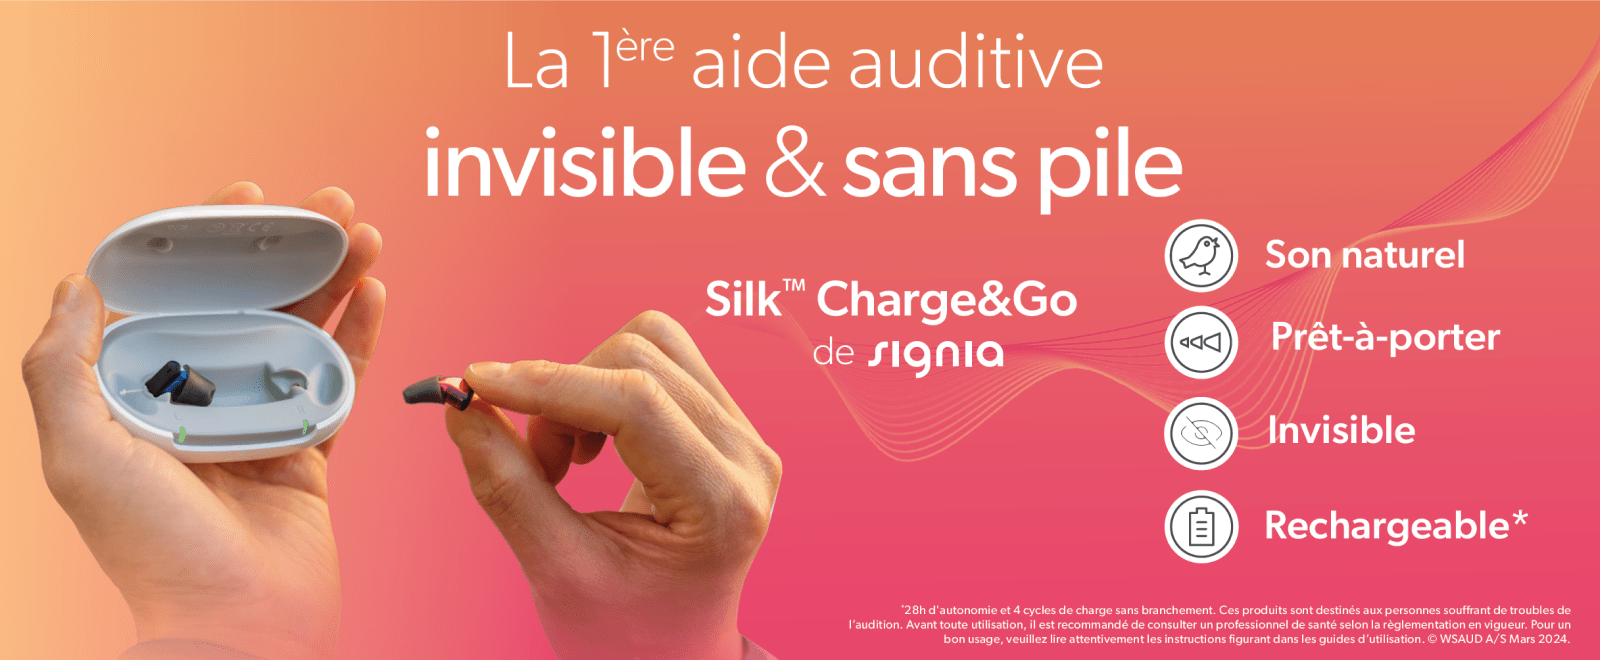 Silk Charge&Co de Signia : la 1ère aide auditive invisible et sans pile